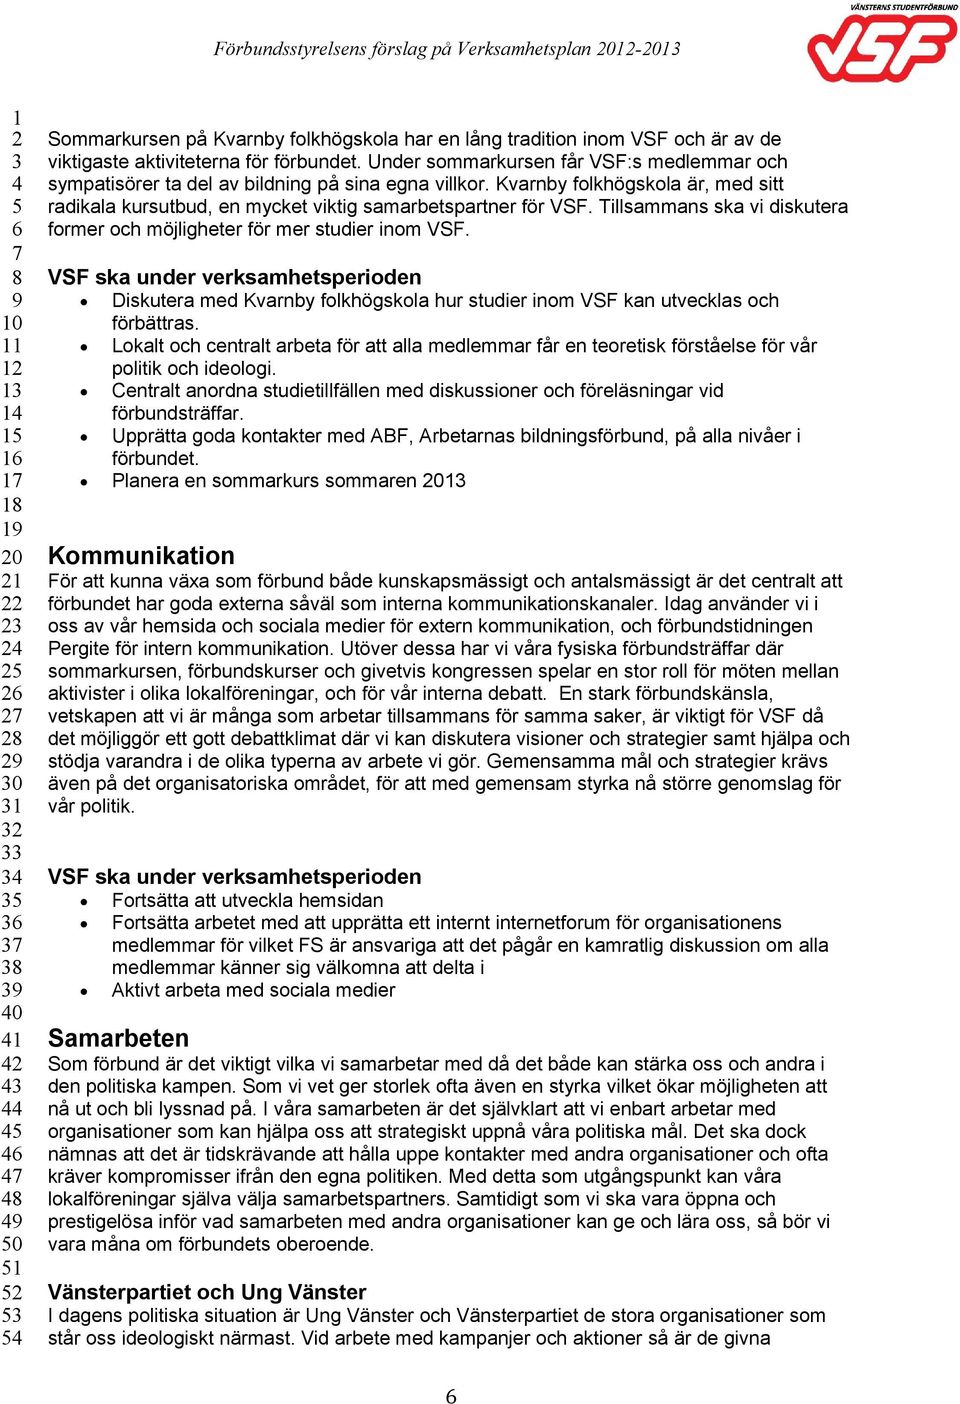 Tillsammans ska vi diskutera former och möjligheter för mer studier inom VSF. Diskutera med Kvarnby folkhögskola hur studier inom VSF kan utvecklas och förbättras.